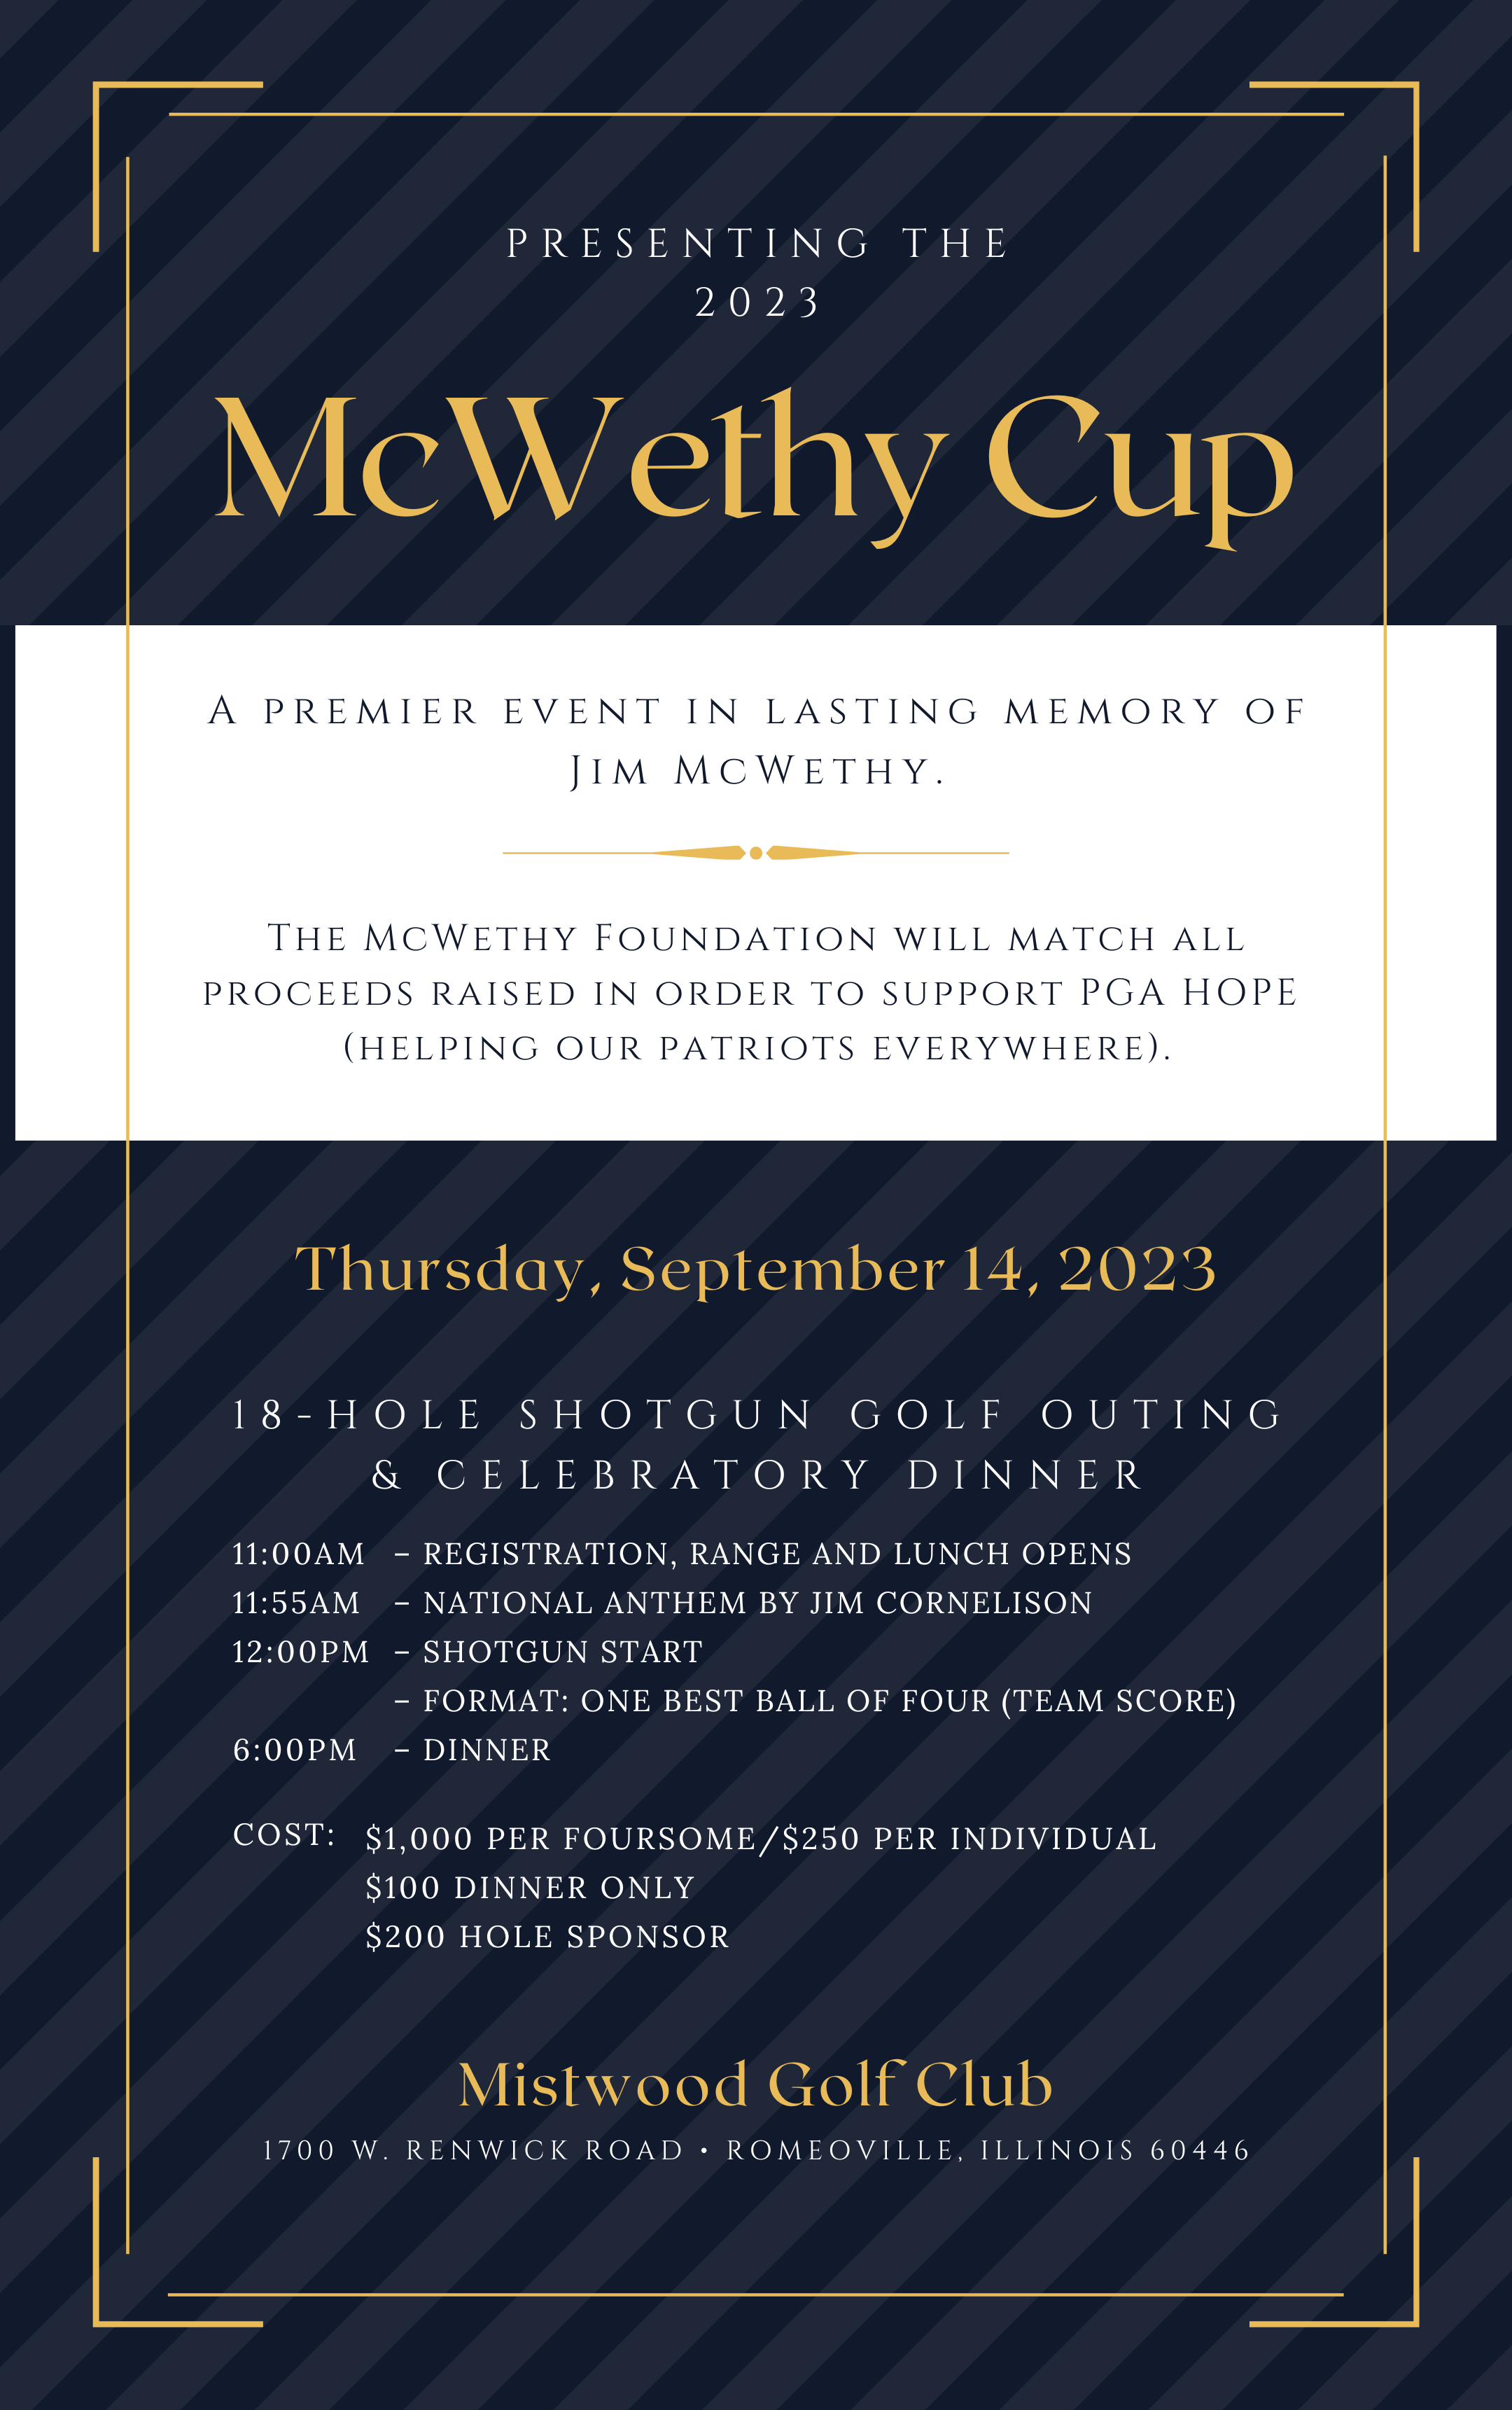 MGC McWethy Cup